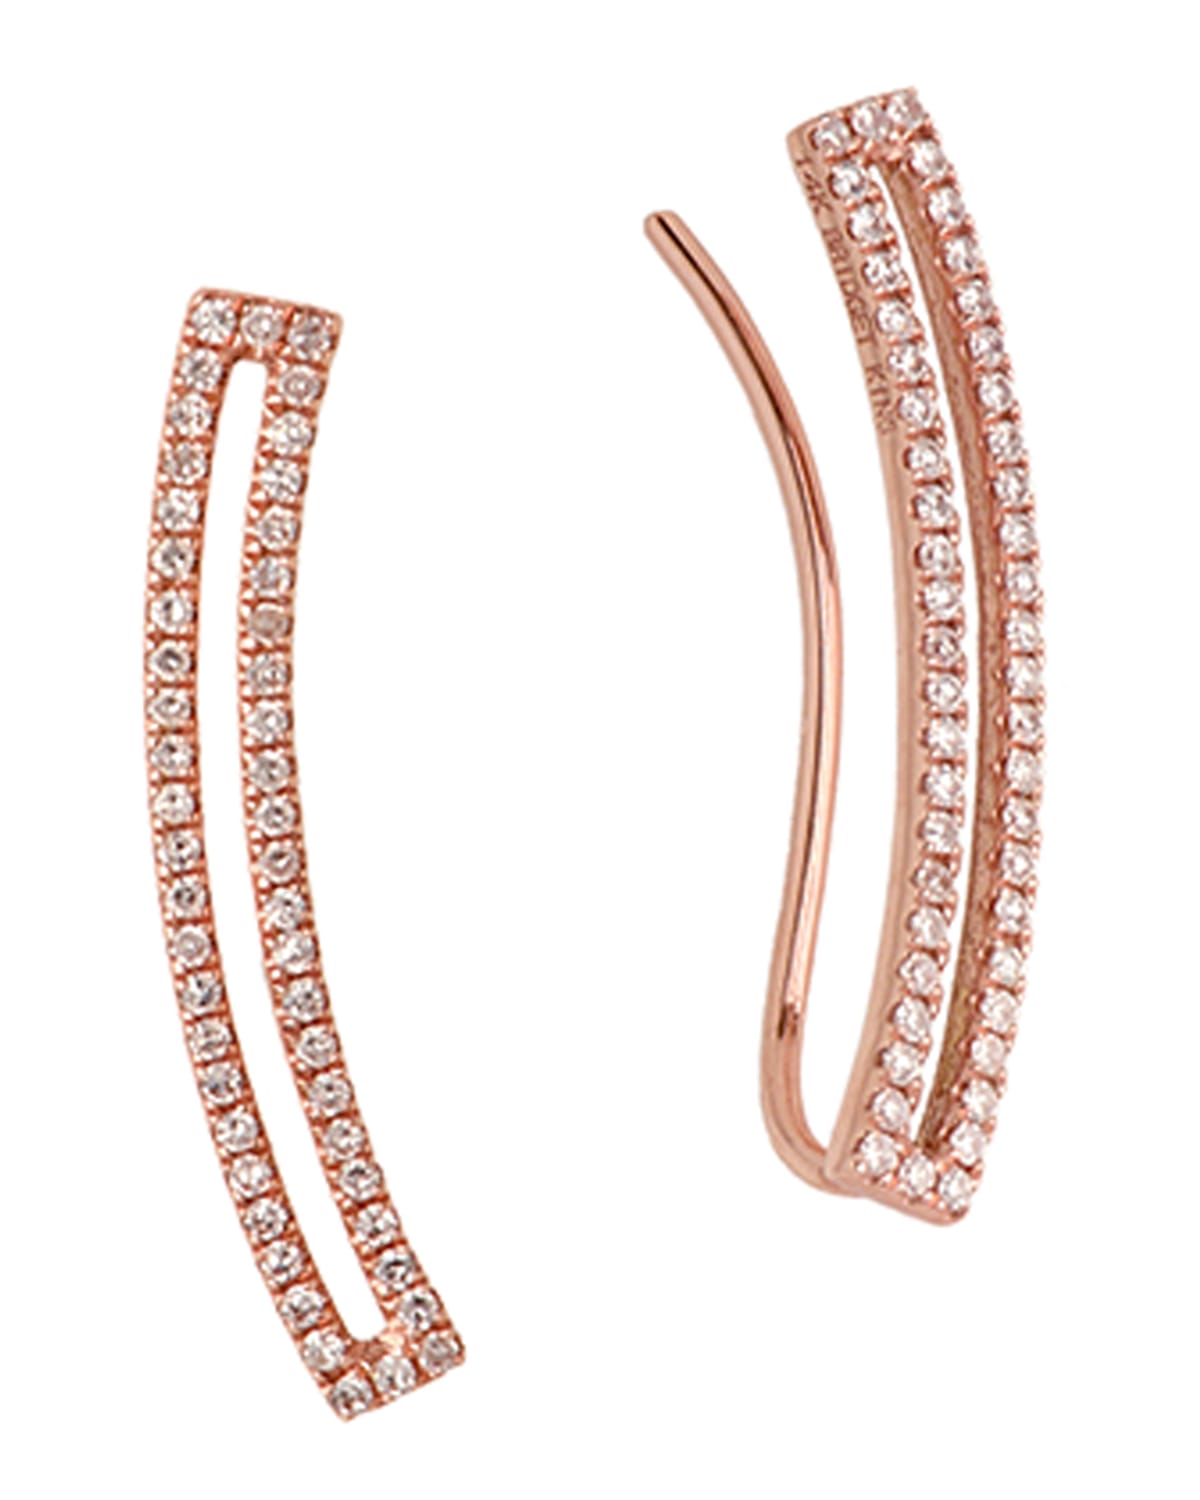 Bridget King Jewelry 14k Curved Open Bar Diamond Earrings In Rose Gold